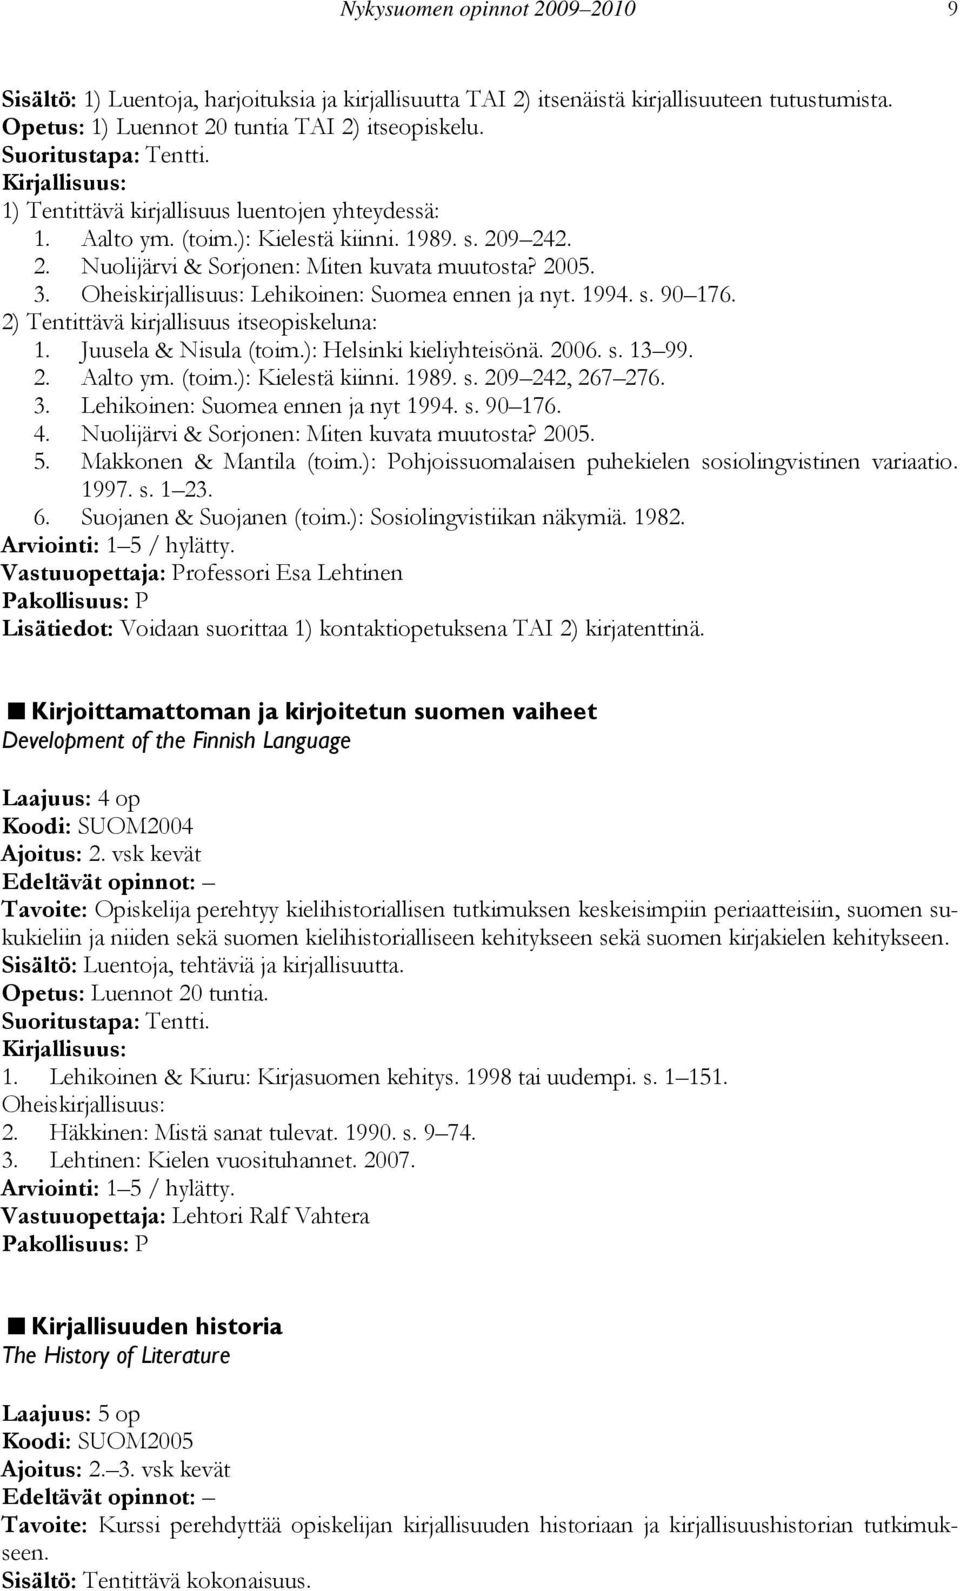 Oheiskirjallisuus: Lehikoinen: Suomea ennen ja nyt. 1994. s. 90 176. 2) Tentittävä kirjallisuus itseopiskeluna: 1. Juusela & Nisula (toim.): Helsinki kieliyhteisönä. 2006. s. 13 99. 2. Aalto ym.